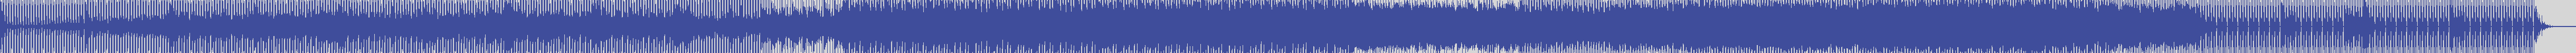 atomic_recordings [AR019] Marcmand - Carabika Circle [Original Mix] audio wave form